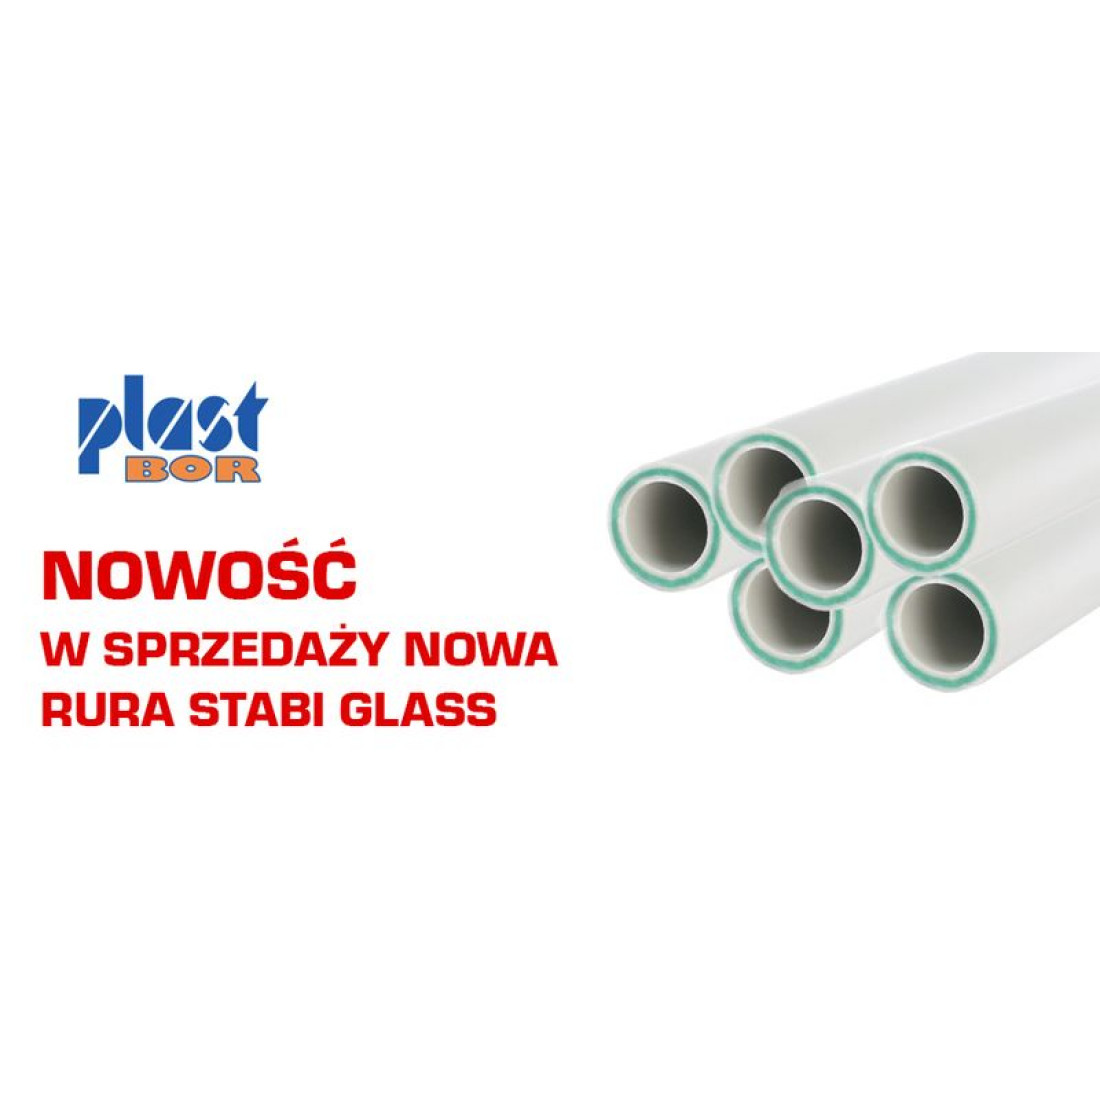 Nowość PLASTBOR - nowa rura STABI GLASS